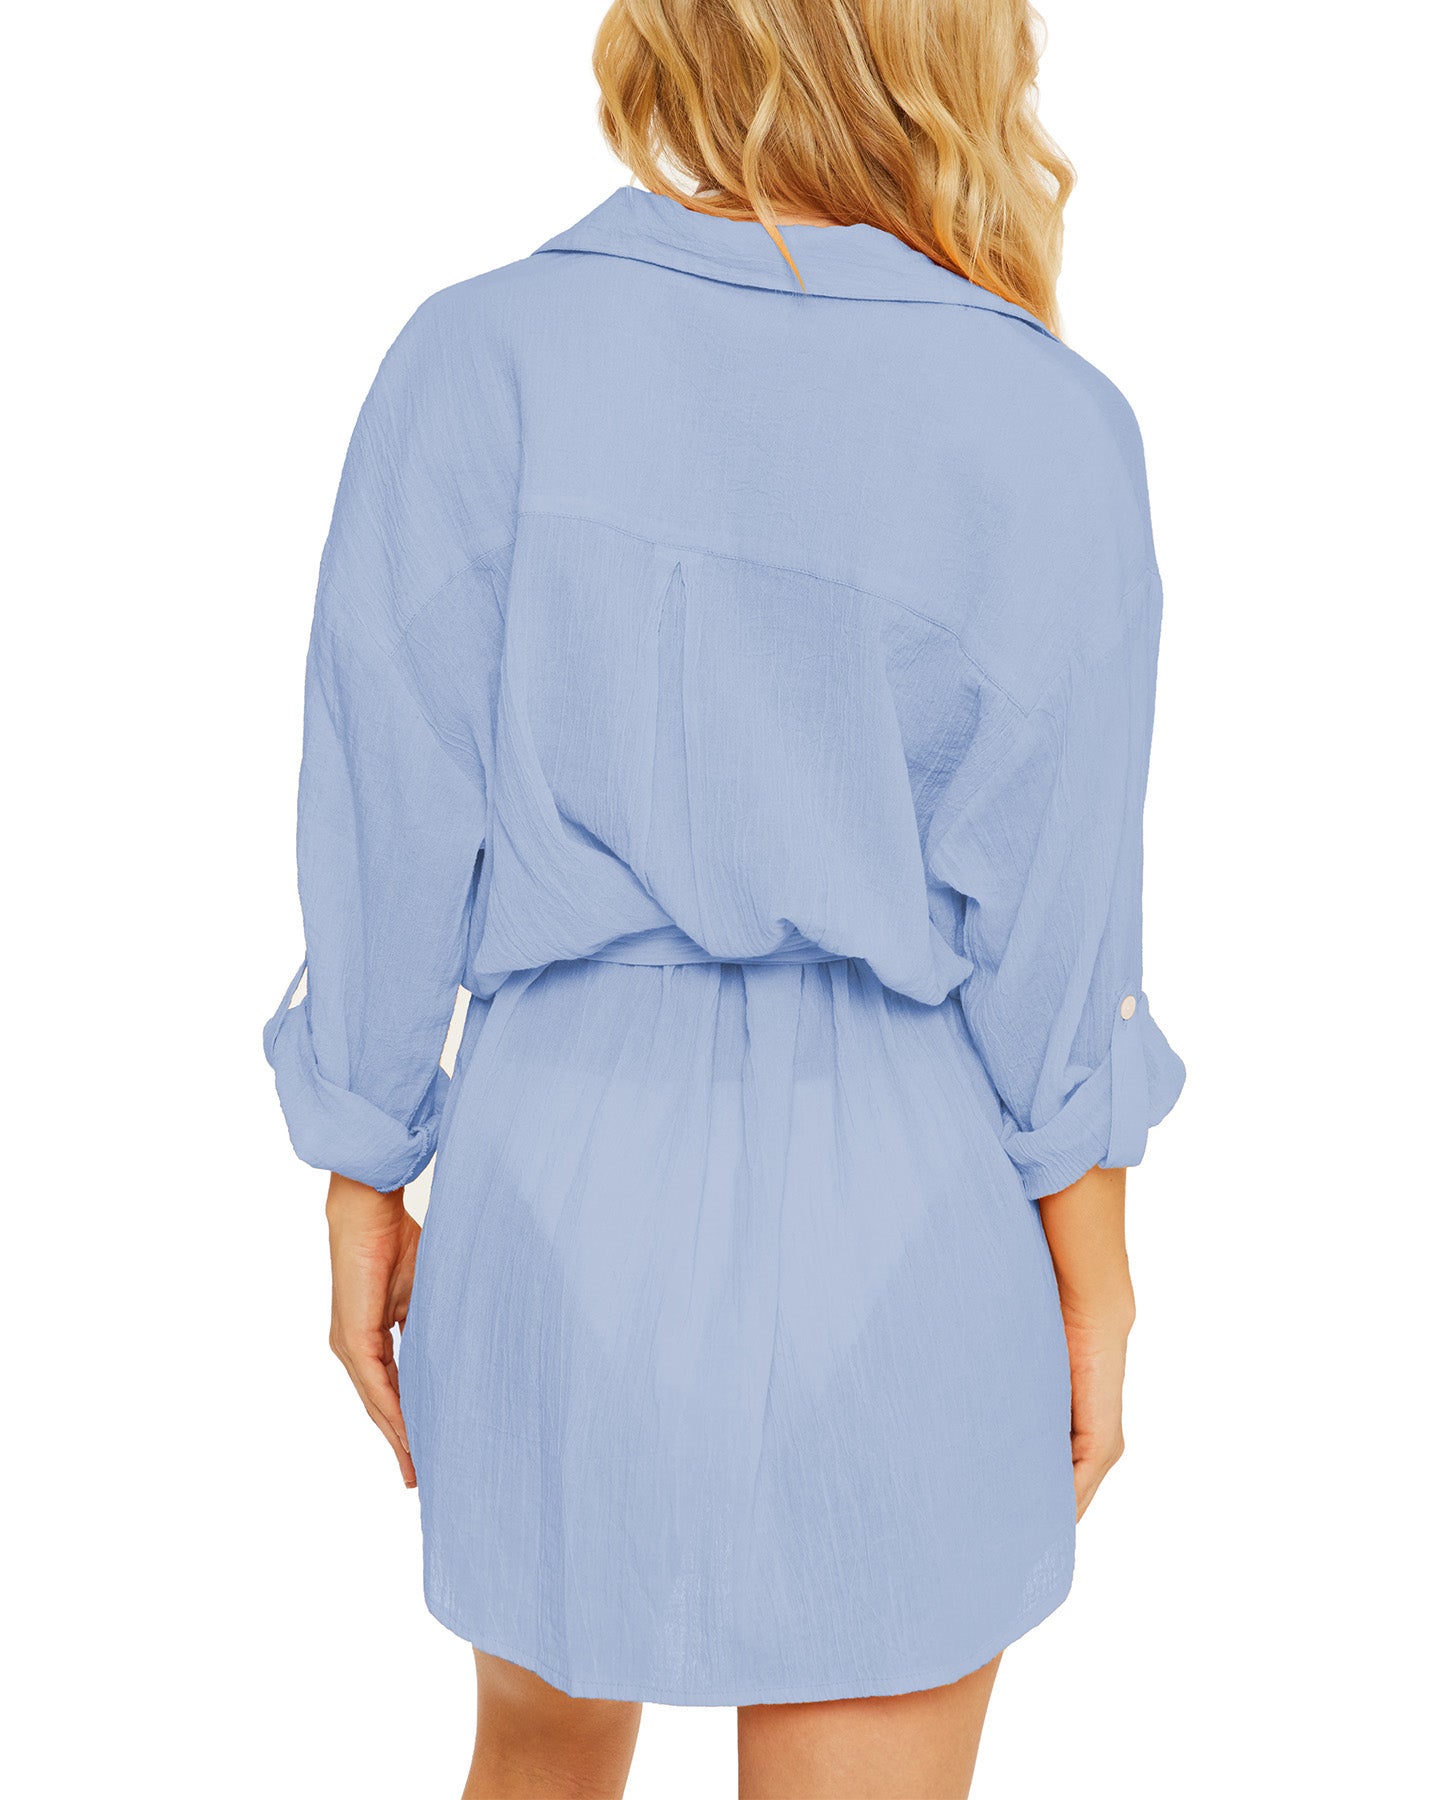 Model wearing a gauzy button up shirt dress in light blue